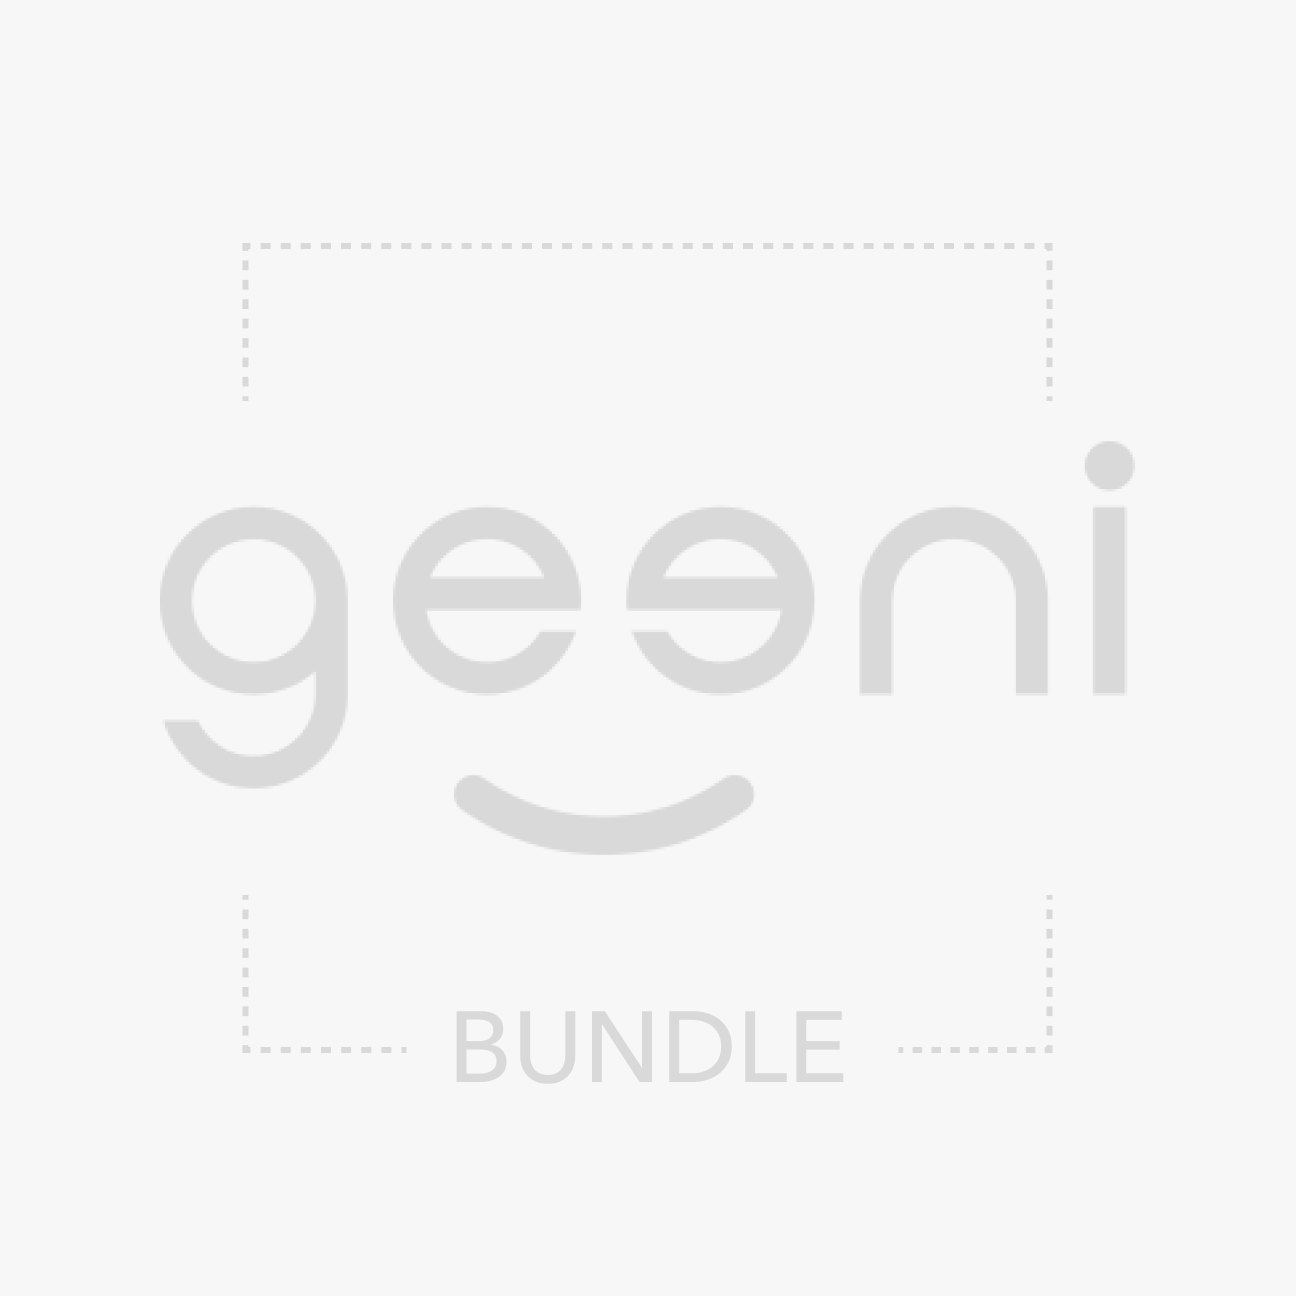 Geeni Prisma Strip 10 (9.8 ft.) + Geeni Indoor/Outdoor Weatherproof Smart Plug - Duo (1-pack)